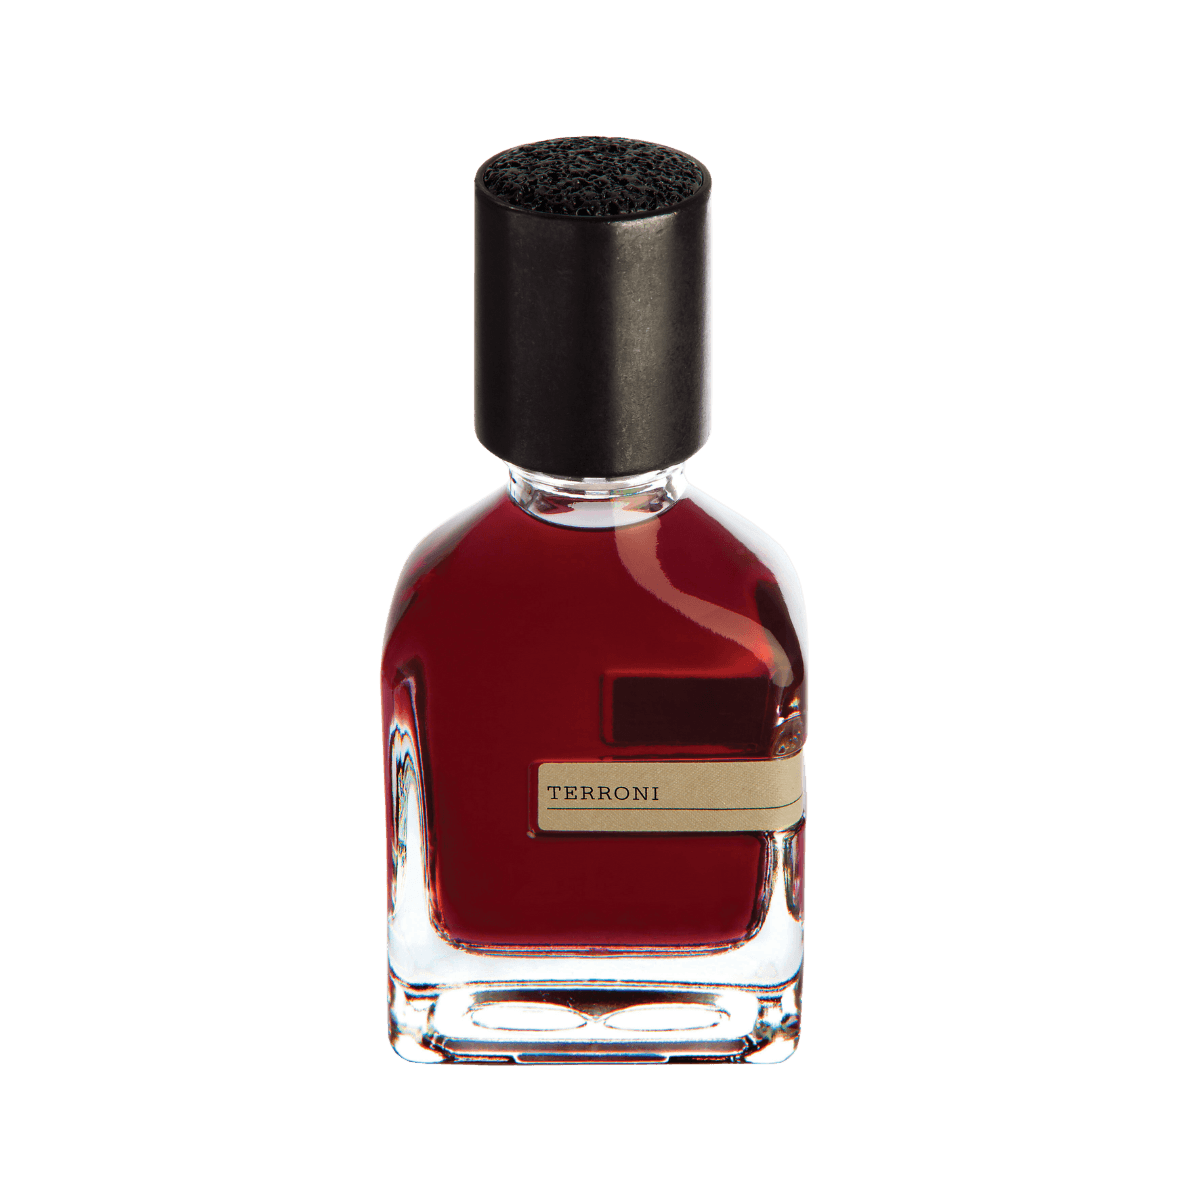 Afbeelding van Terroni extrait de parfum 50 ml van het parfummerk Orto Parisi